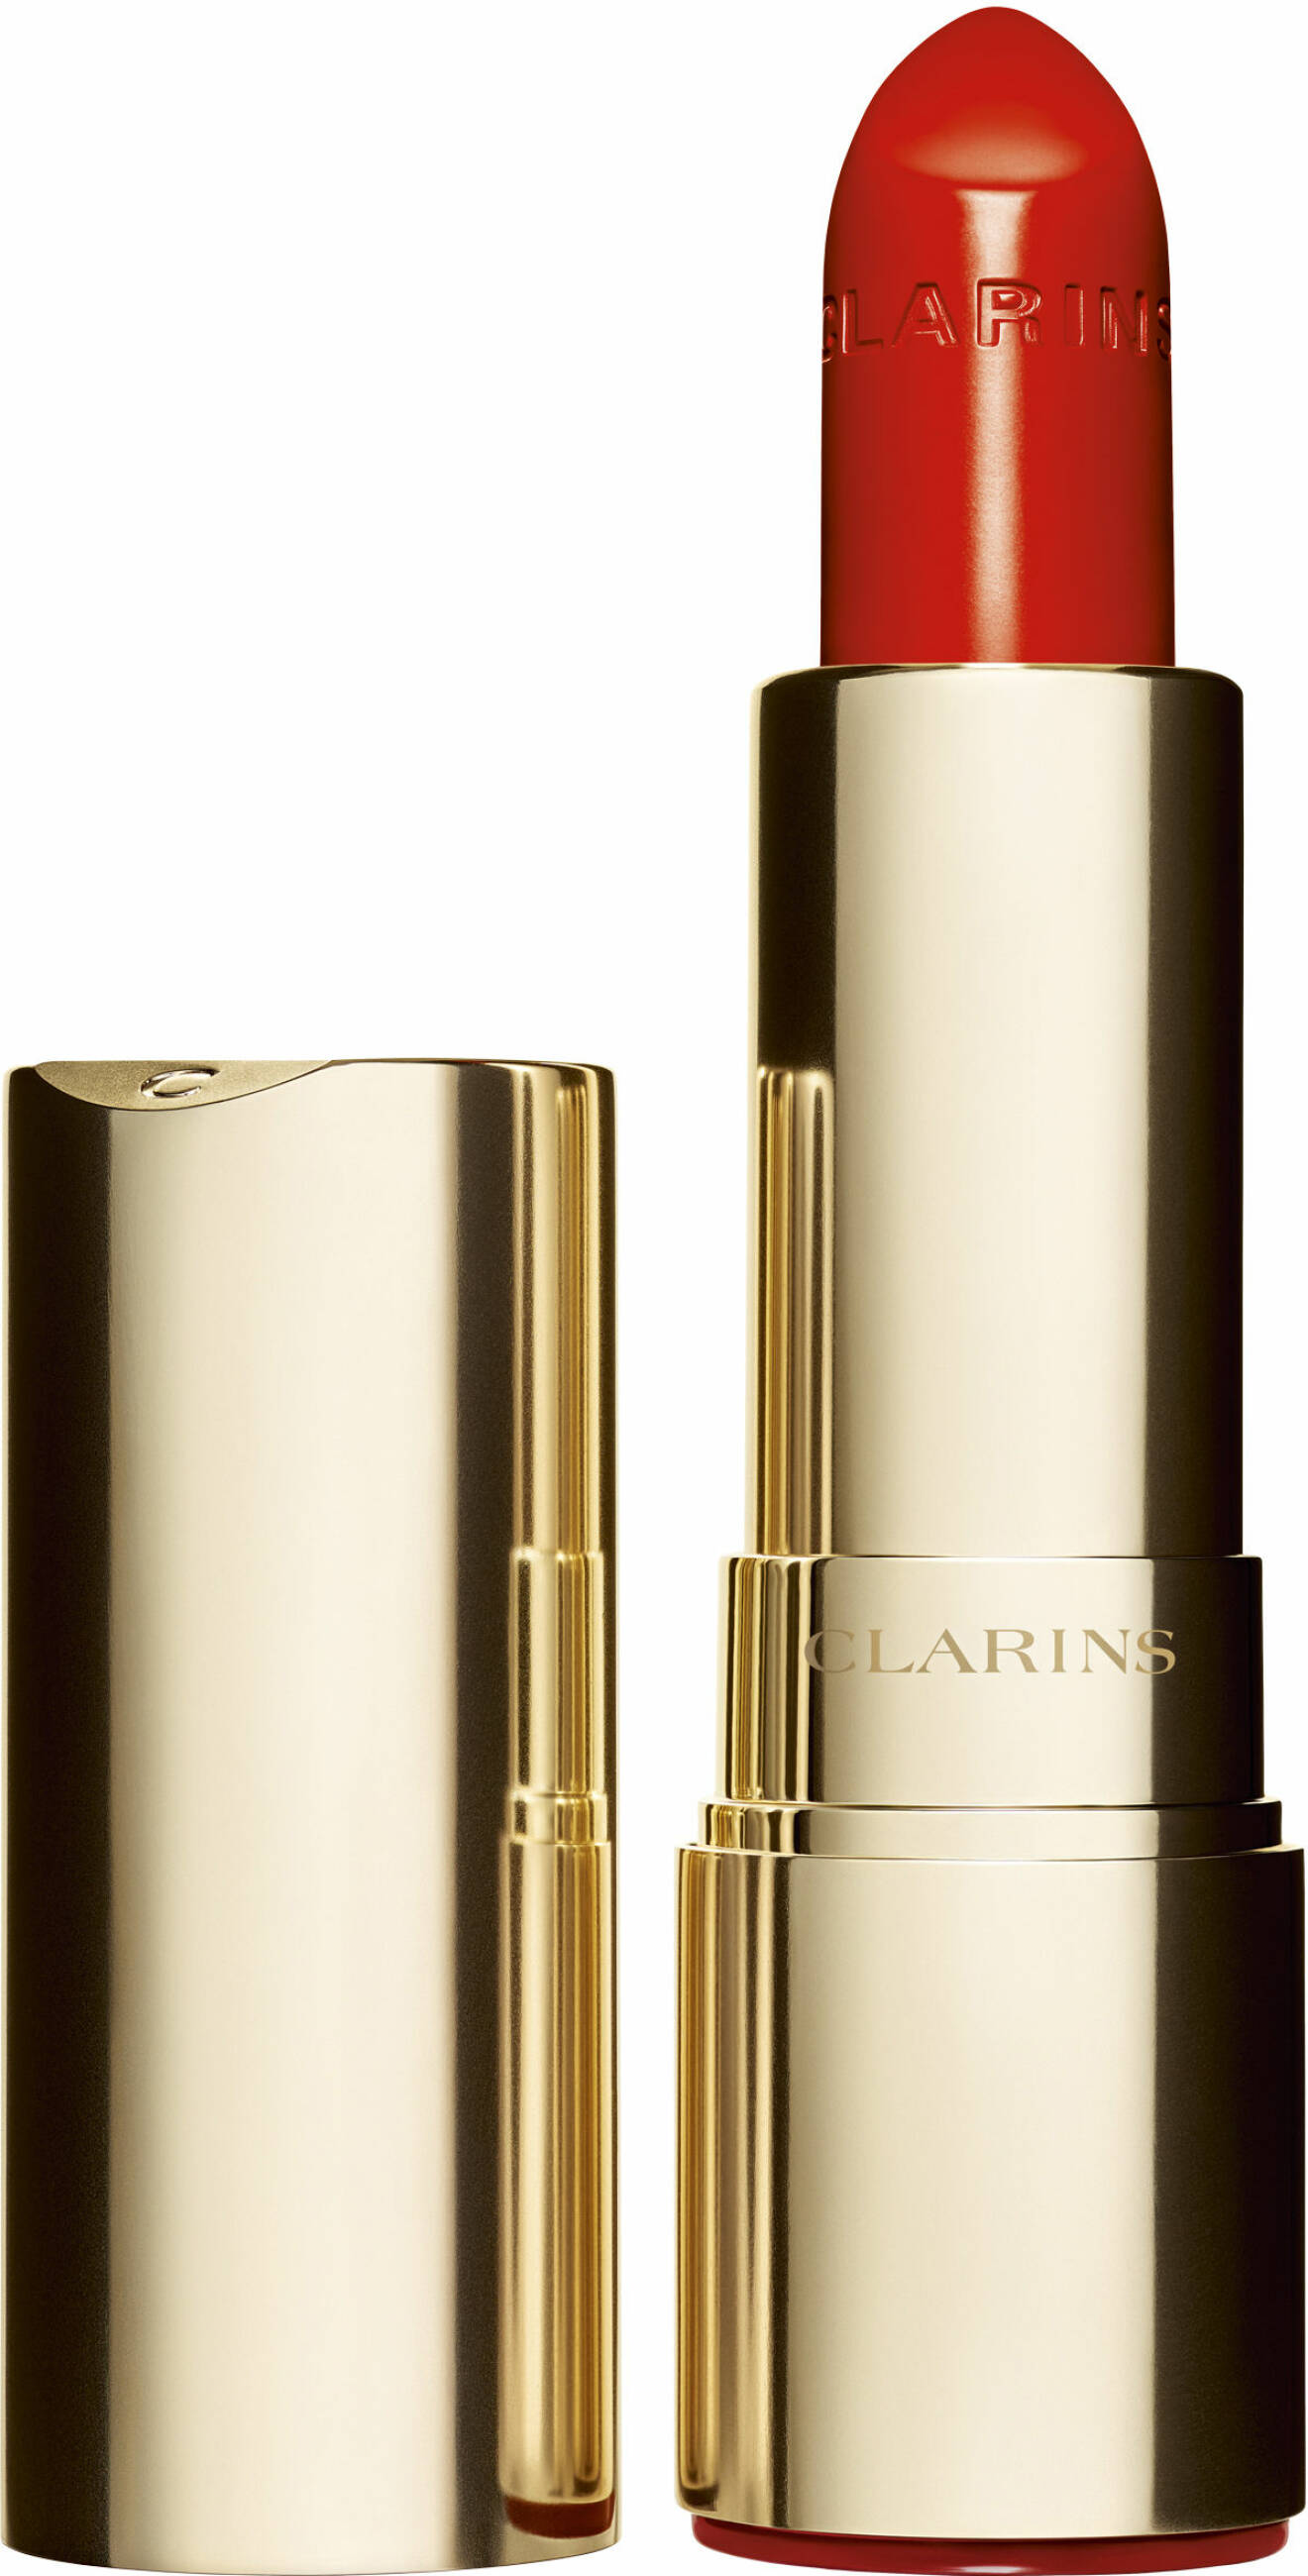 Fuktgivande läppstift som ger en glänsande färg Lips Joli Rouge, från Clarins